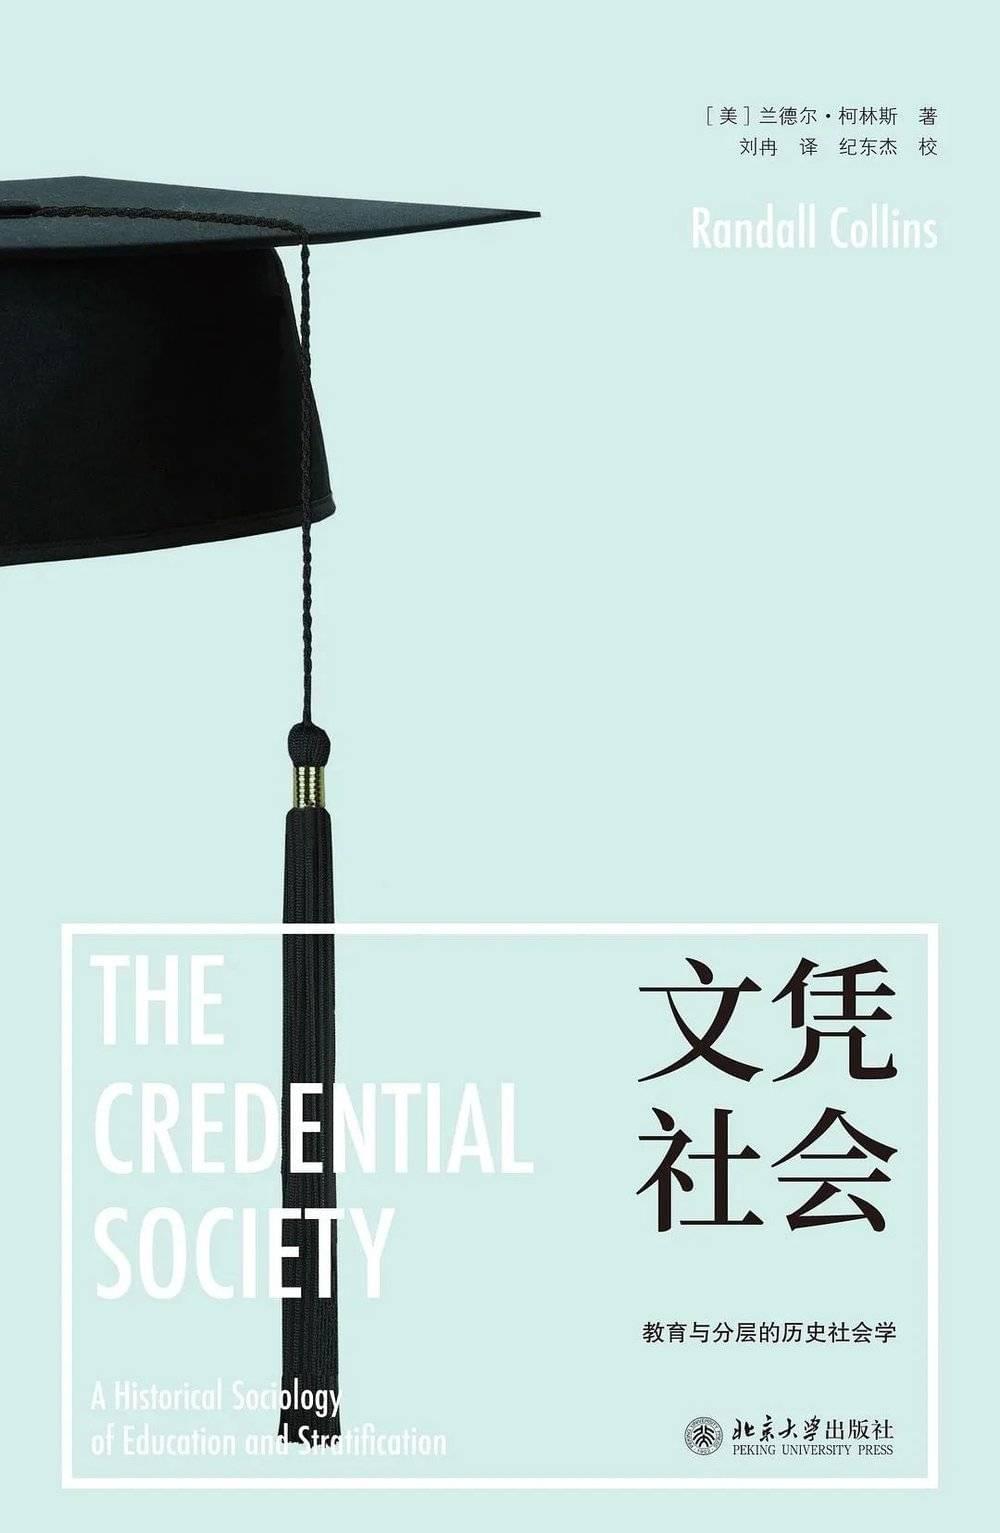 《文凭社会》[美] 兰德尔·柯林斯 著 刘冉 译北京大学出版社 2018年<br>